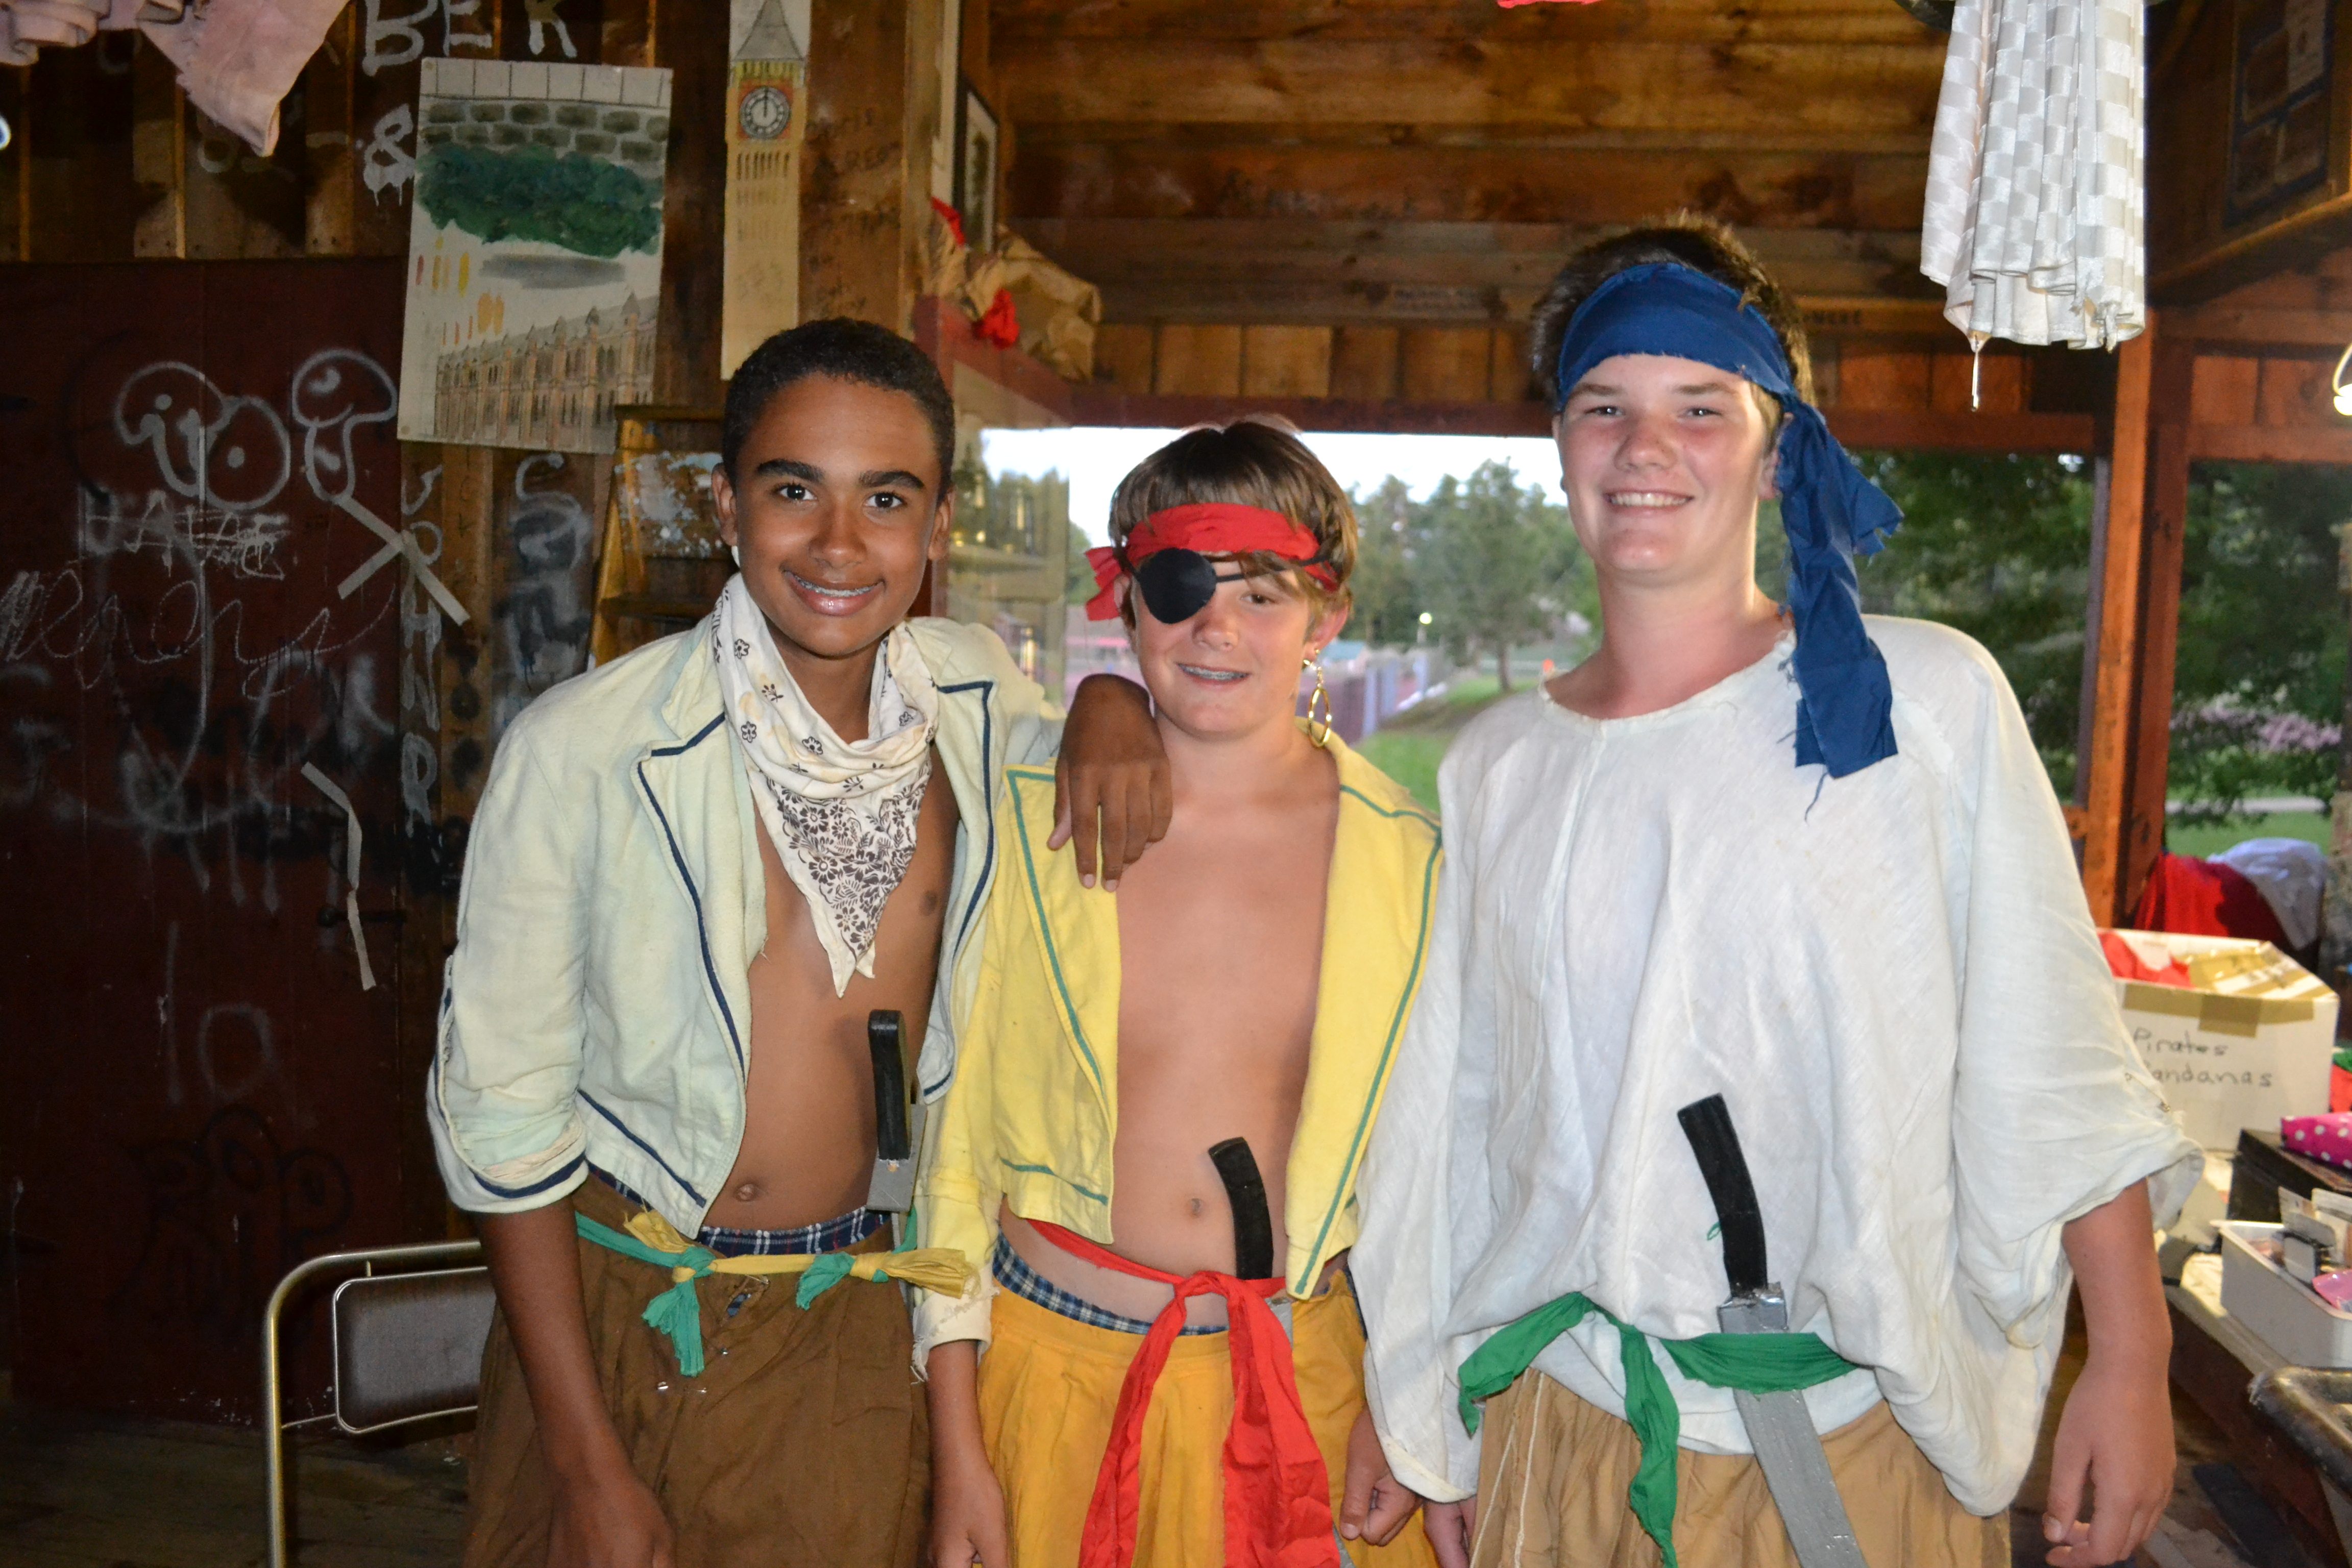 Boys Camp | Residential Boys Camp | Camp Tecumseh